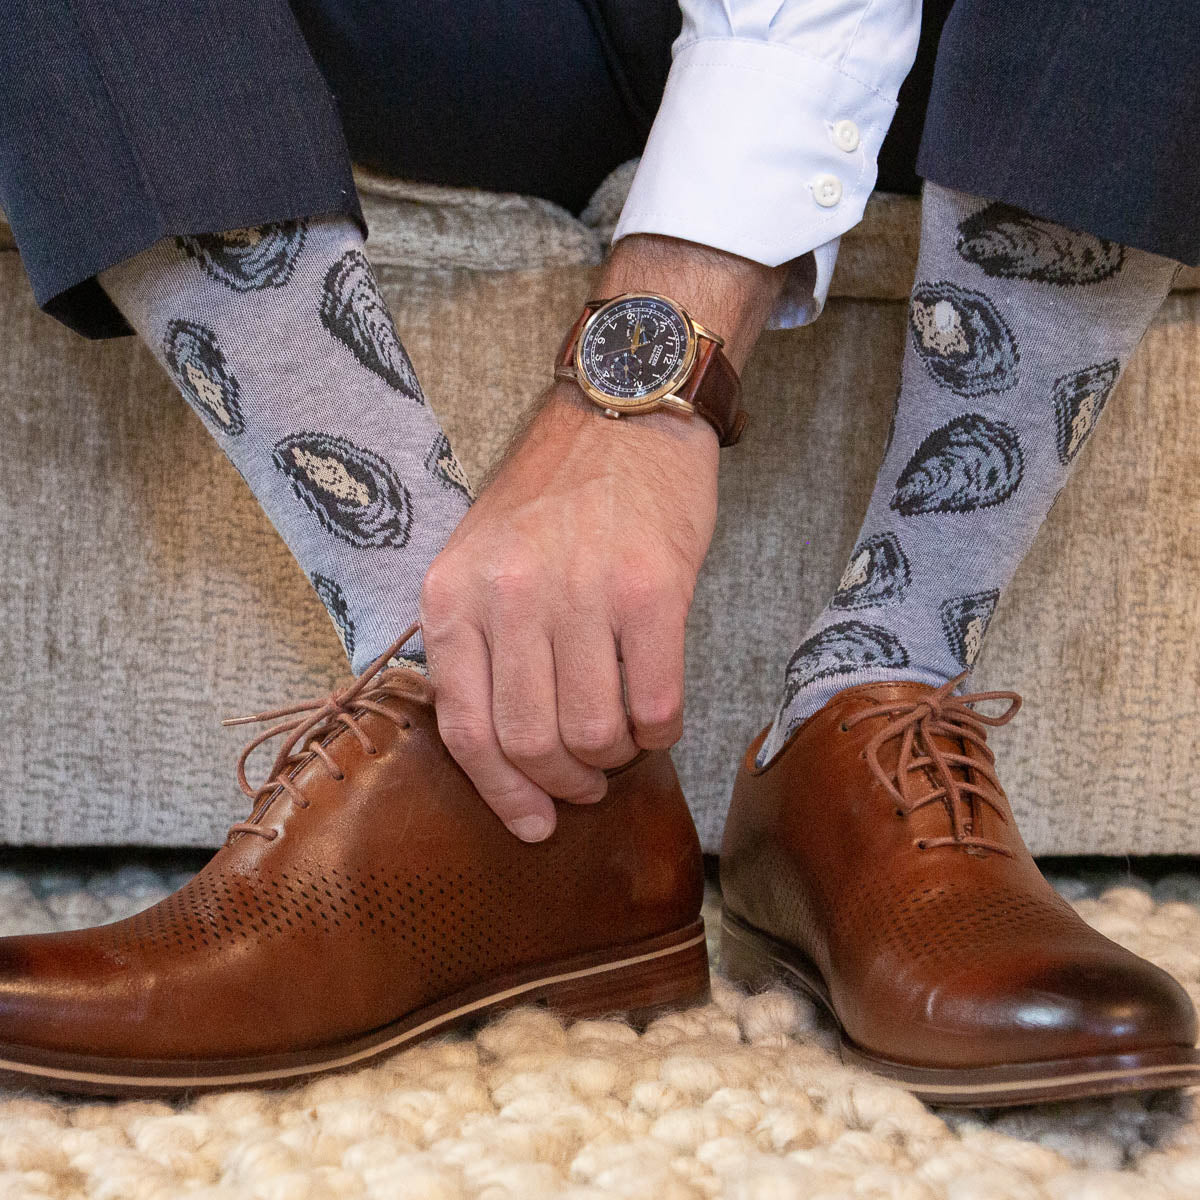 Men's Printed Socks